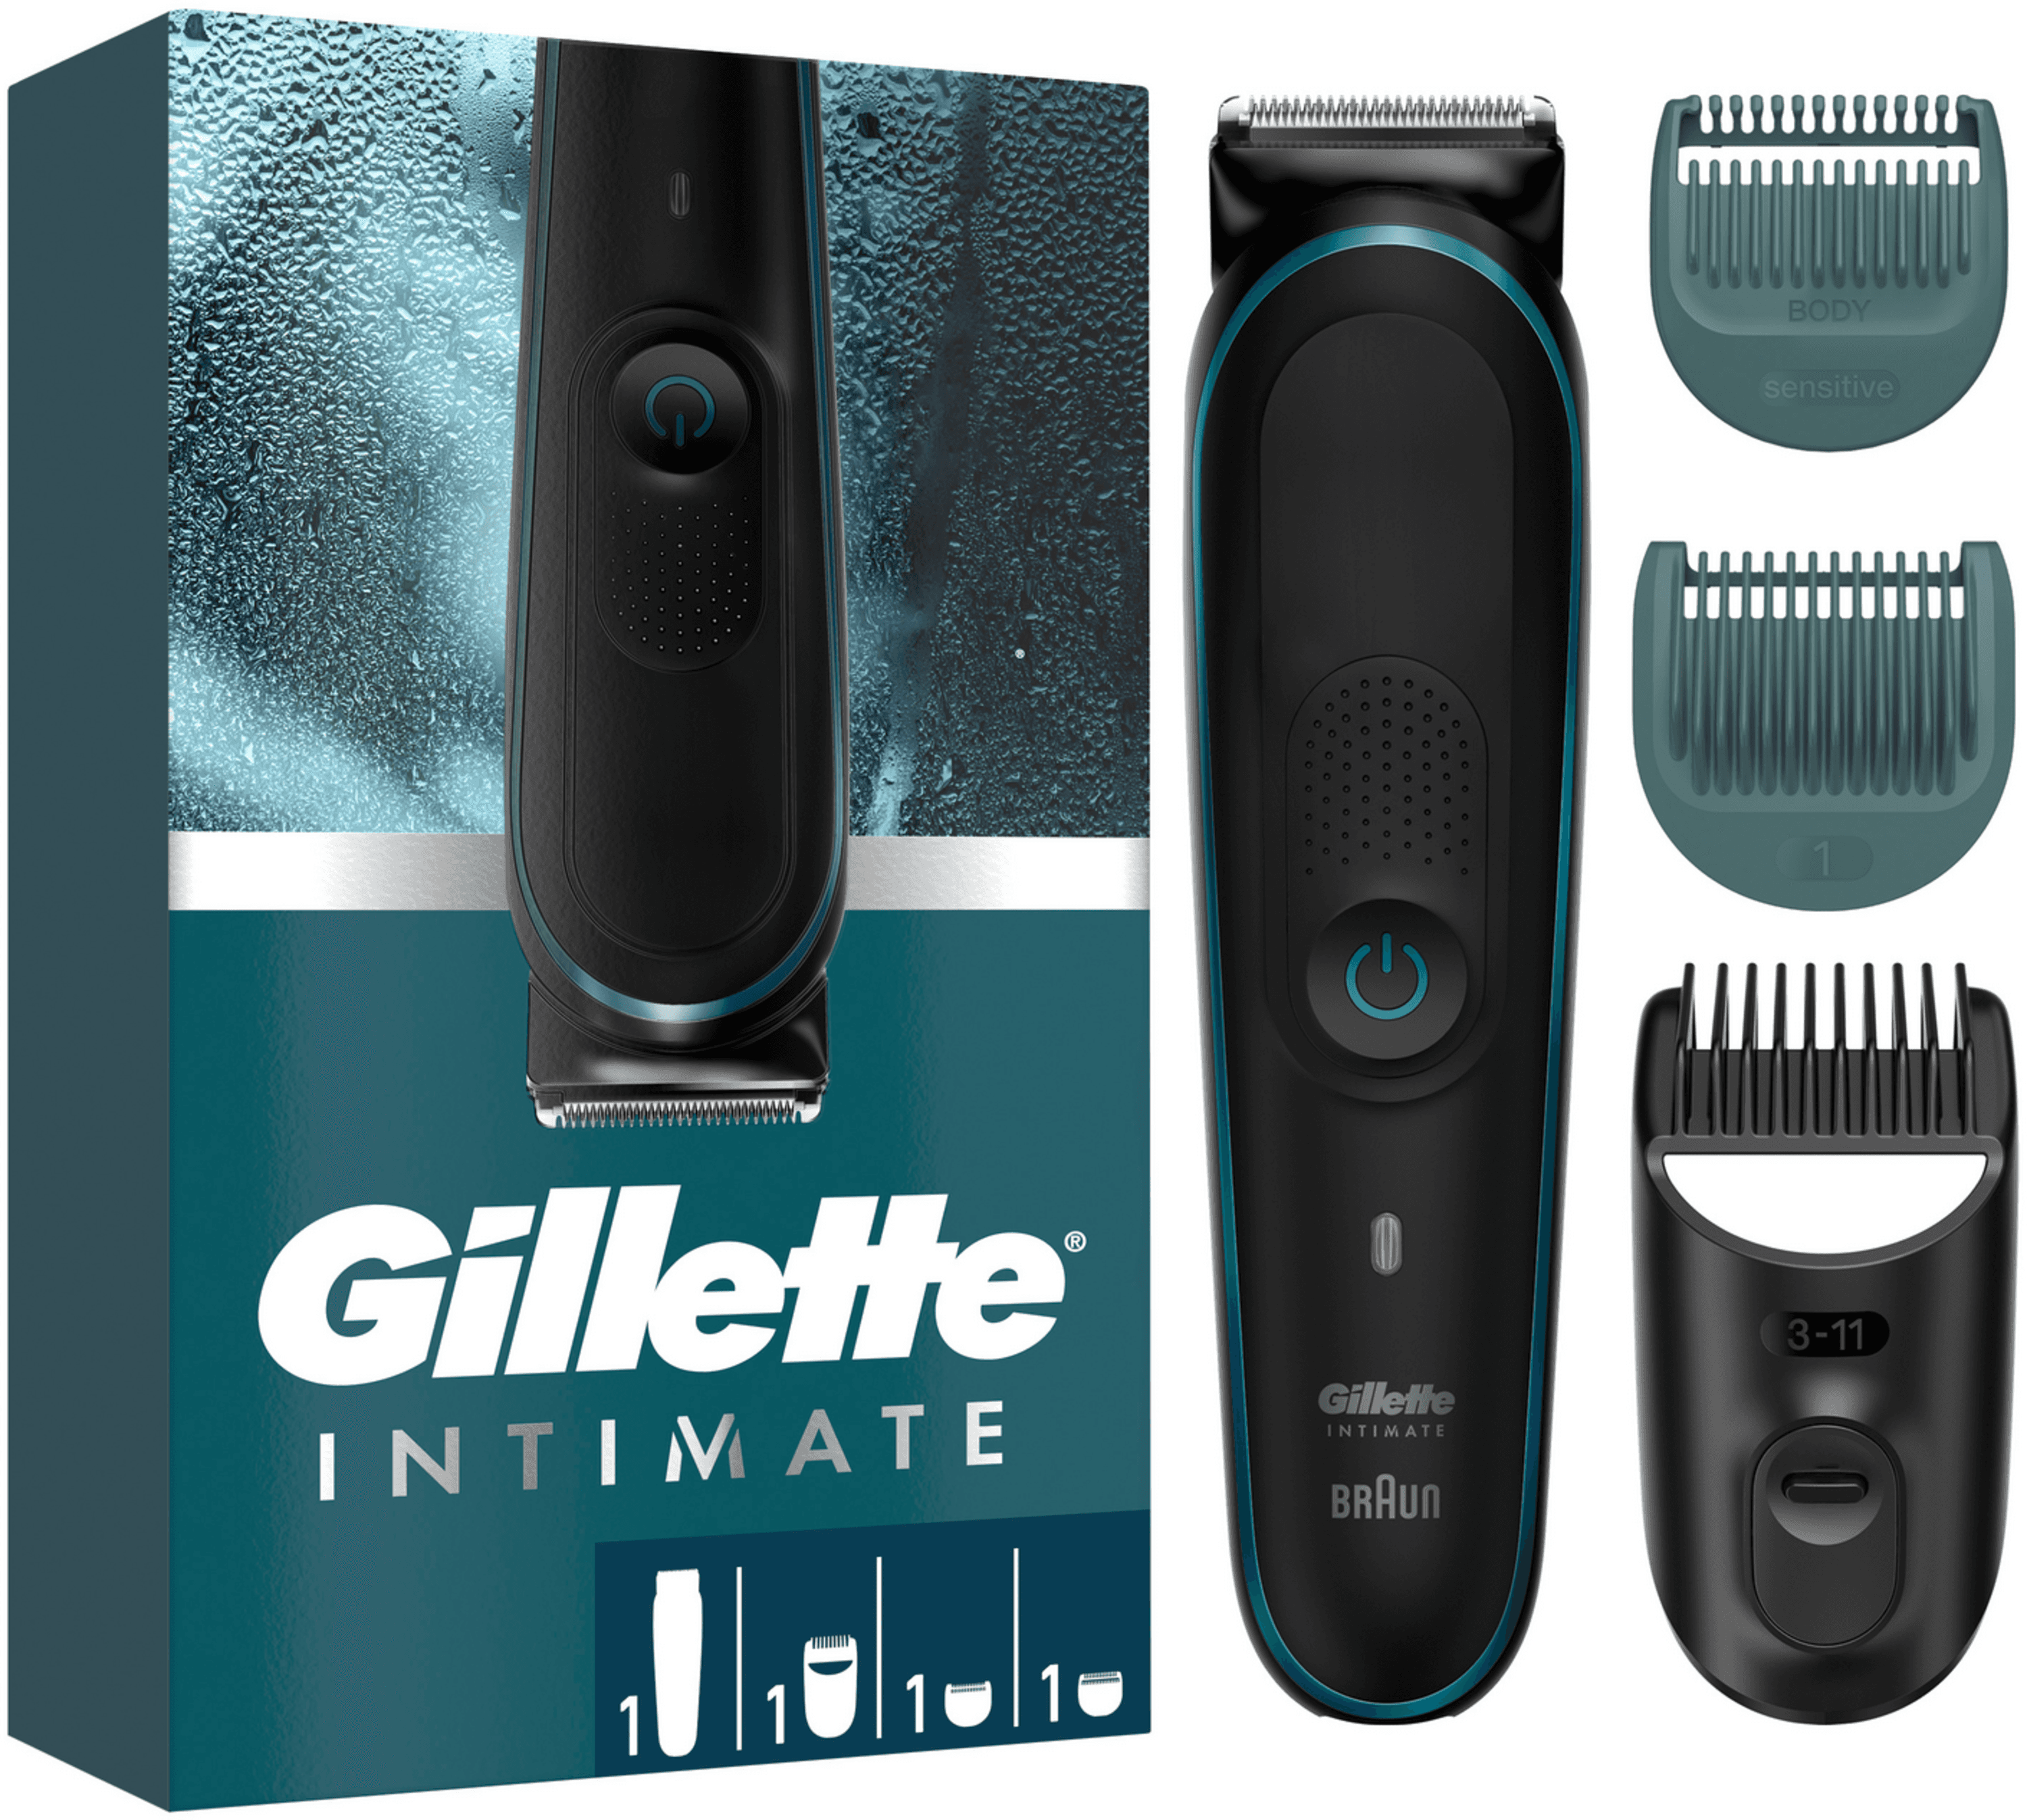 BRAUN - Gillette Intimate Elektrischer Trimmer i5